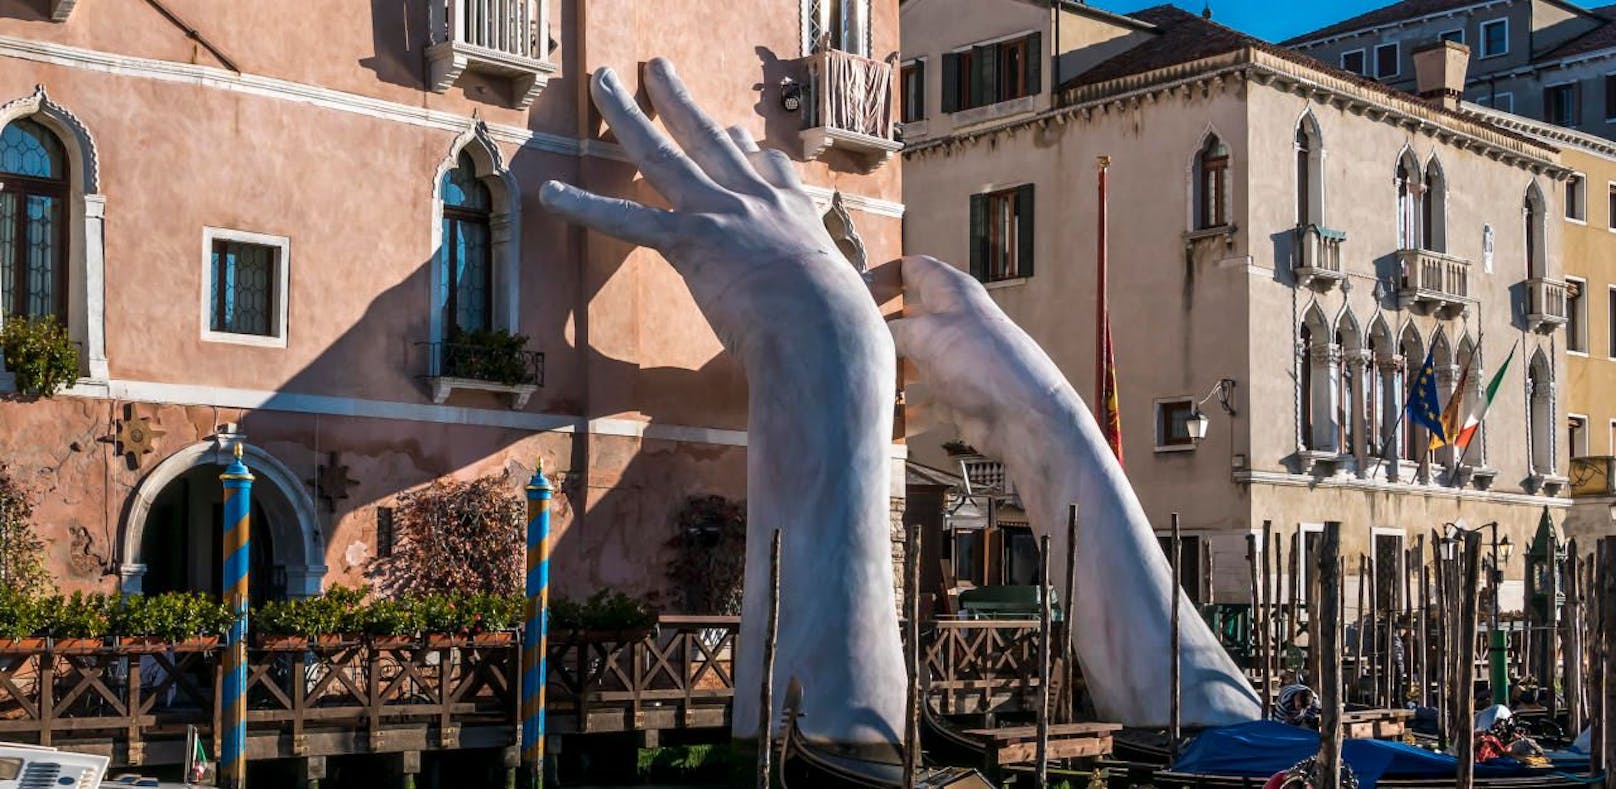 Lorenzo Quinn will mit seinen weißen Riesenhänden an der Fassade des Luxushotels Ca'Sagredo auf den Klimawandel aufmerksam machen - jetzt müssen die Kinderhände aus Denkmalschutz-Gründen weg